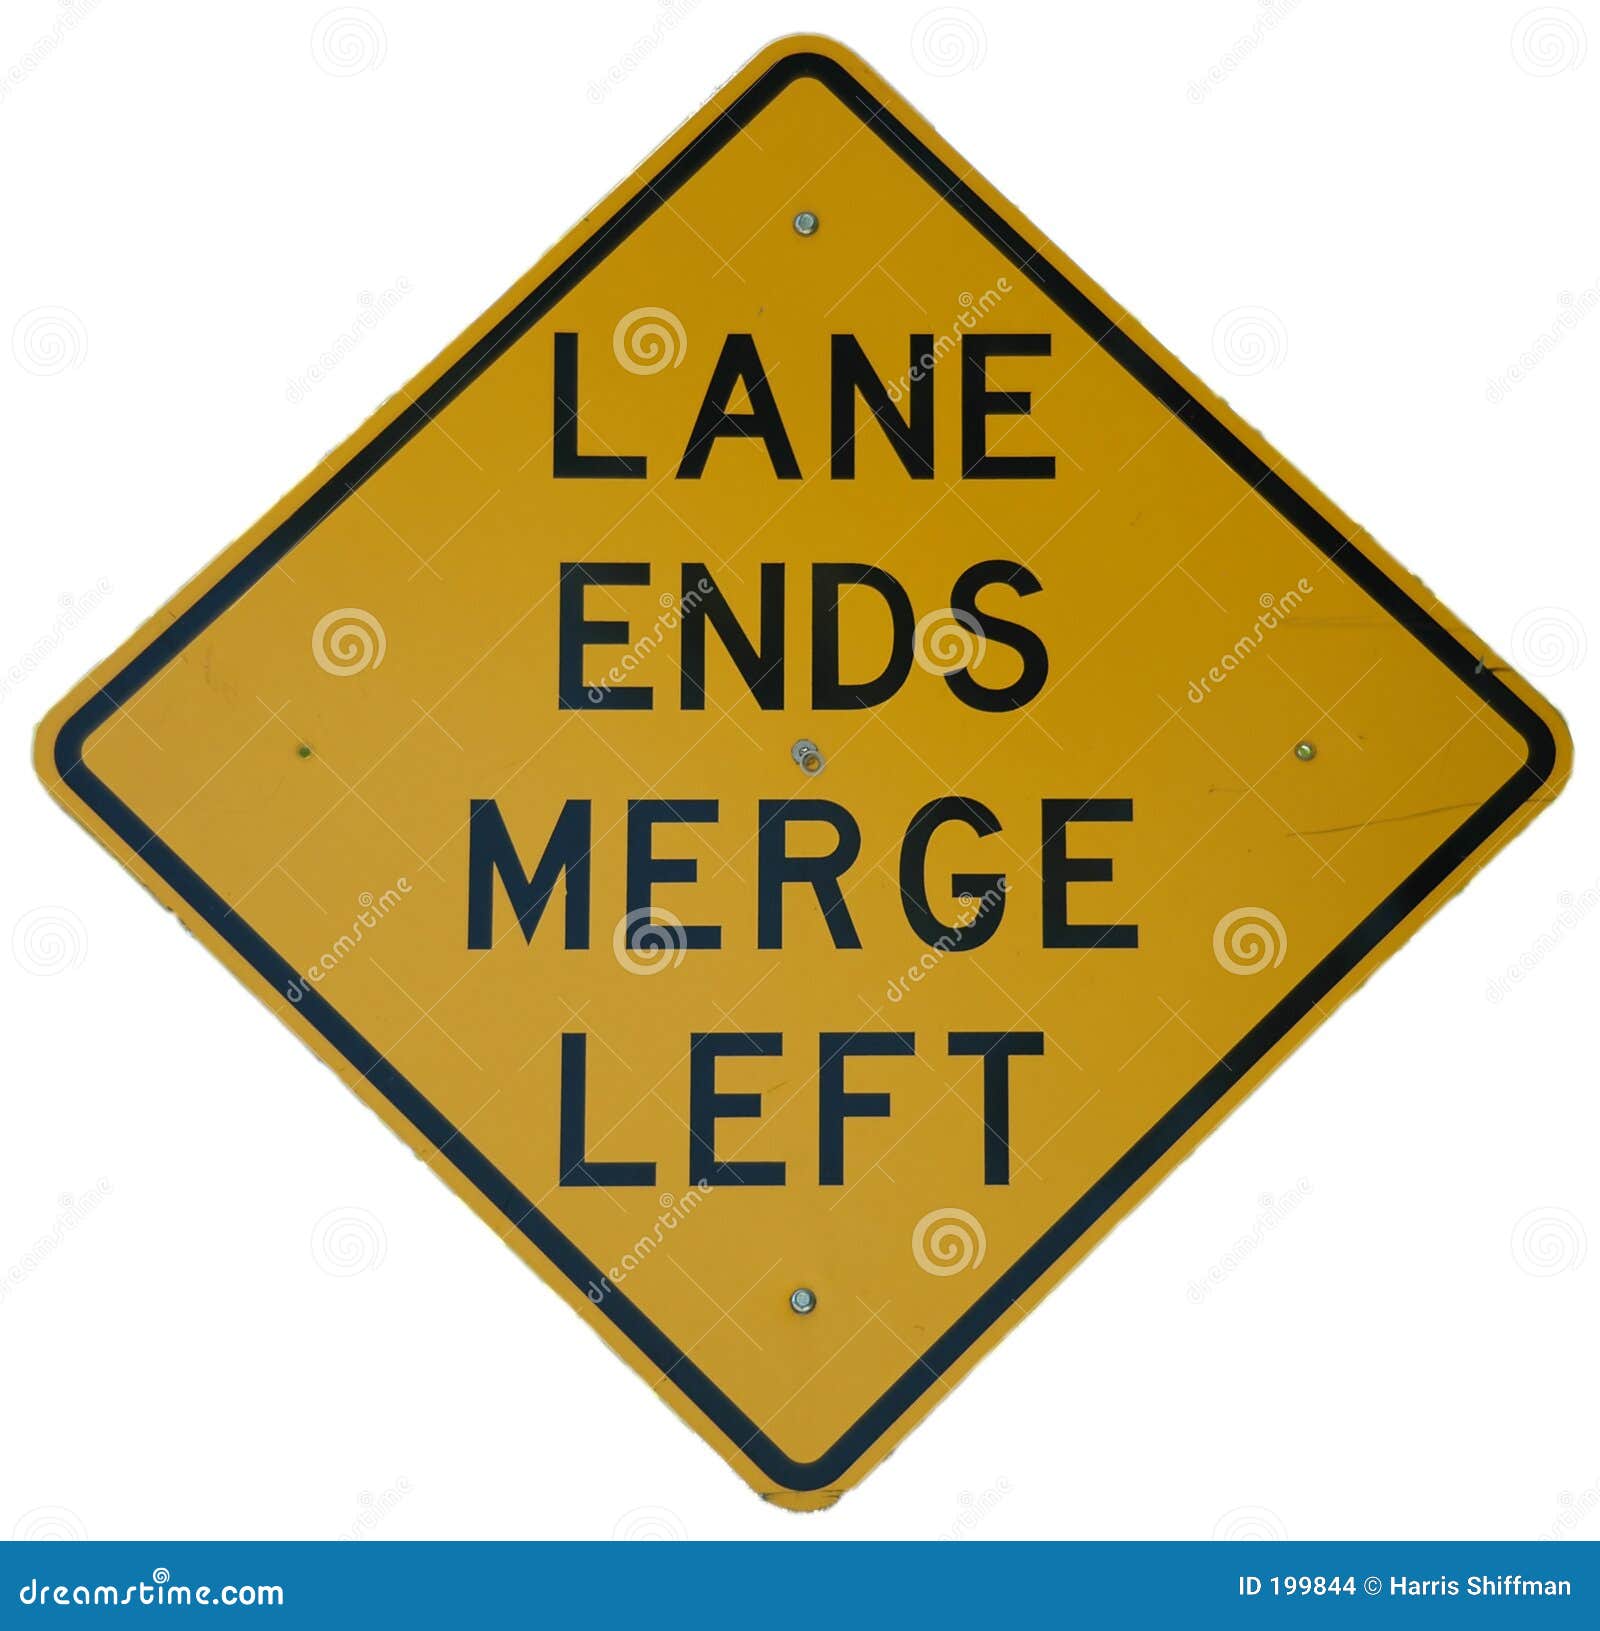 lane ends merge left